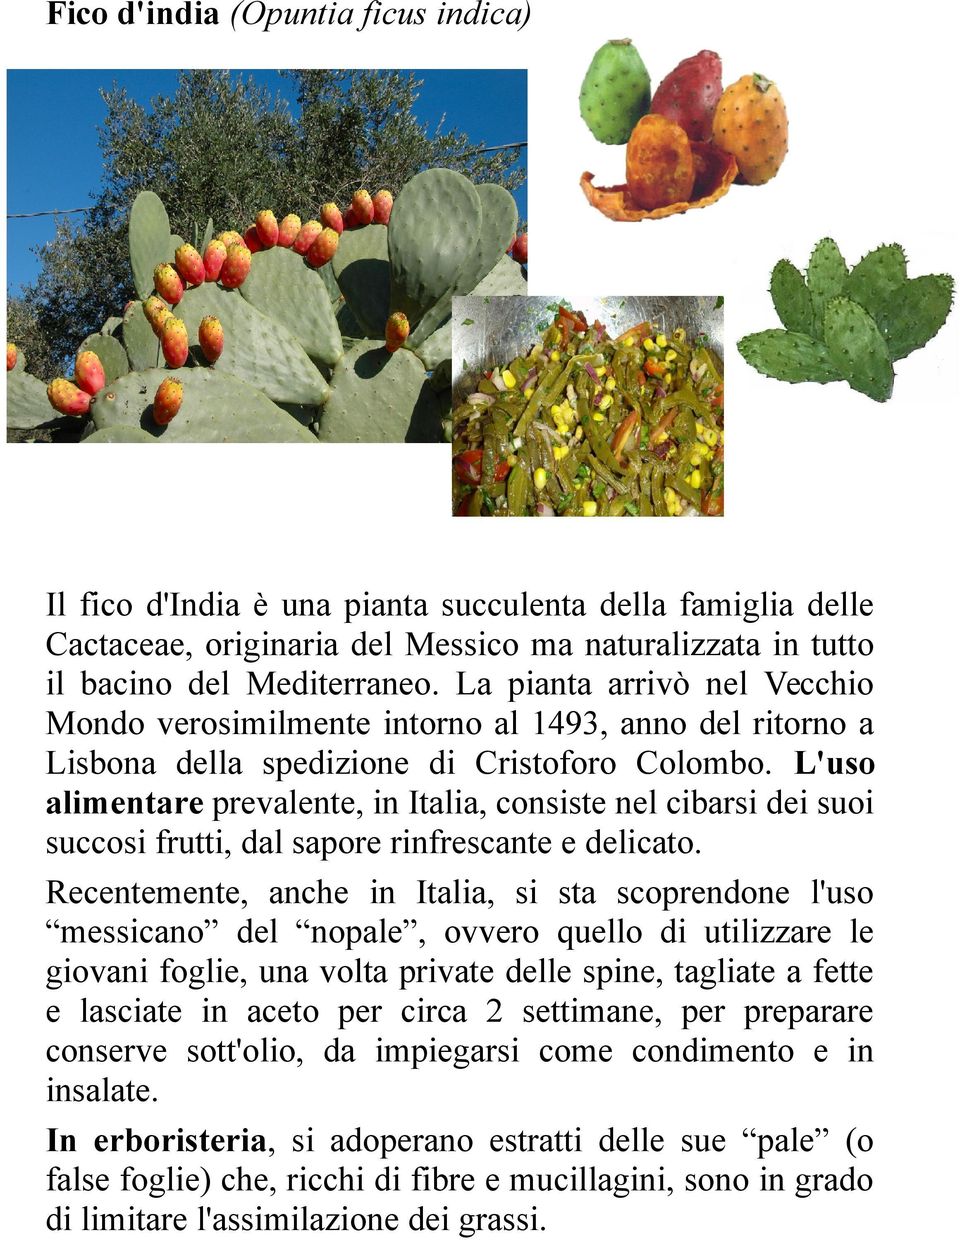 L'uso alimentare prevalente, in Italia, consiste nel cibarsi dei suoi succosi frutti, dal sapore rinfrescante e delicato.